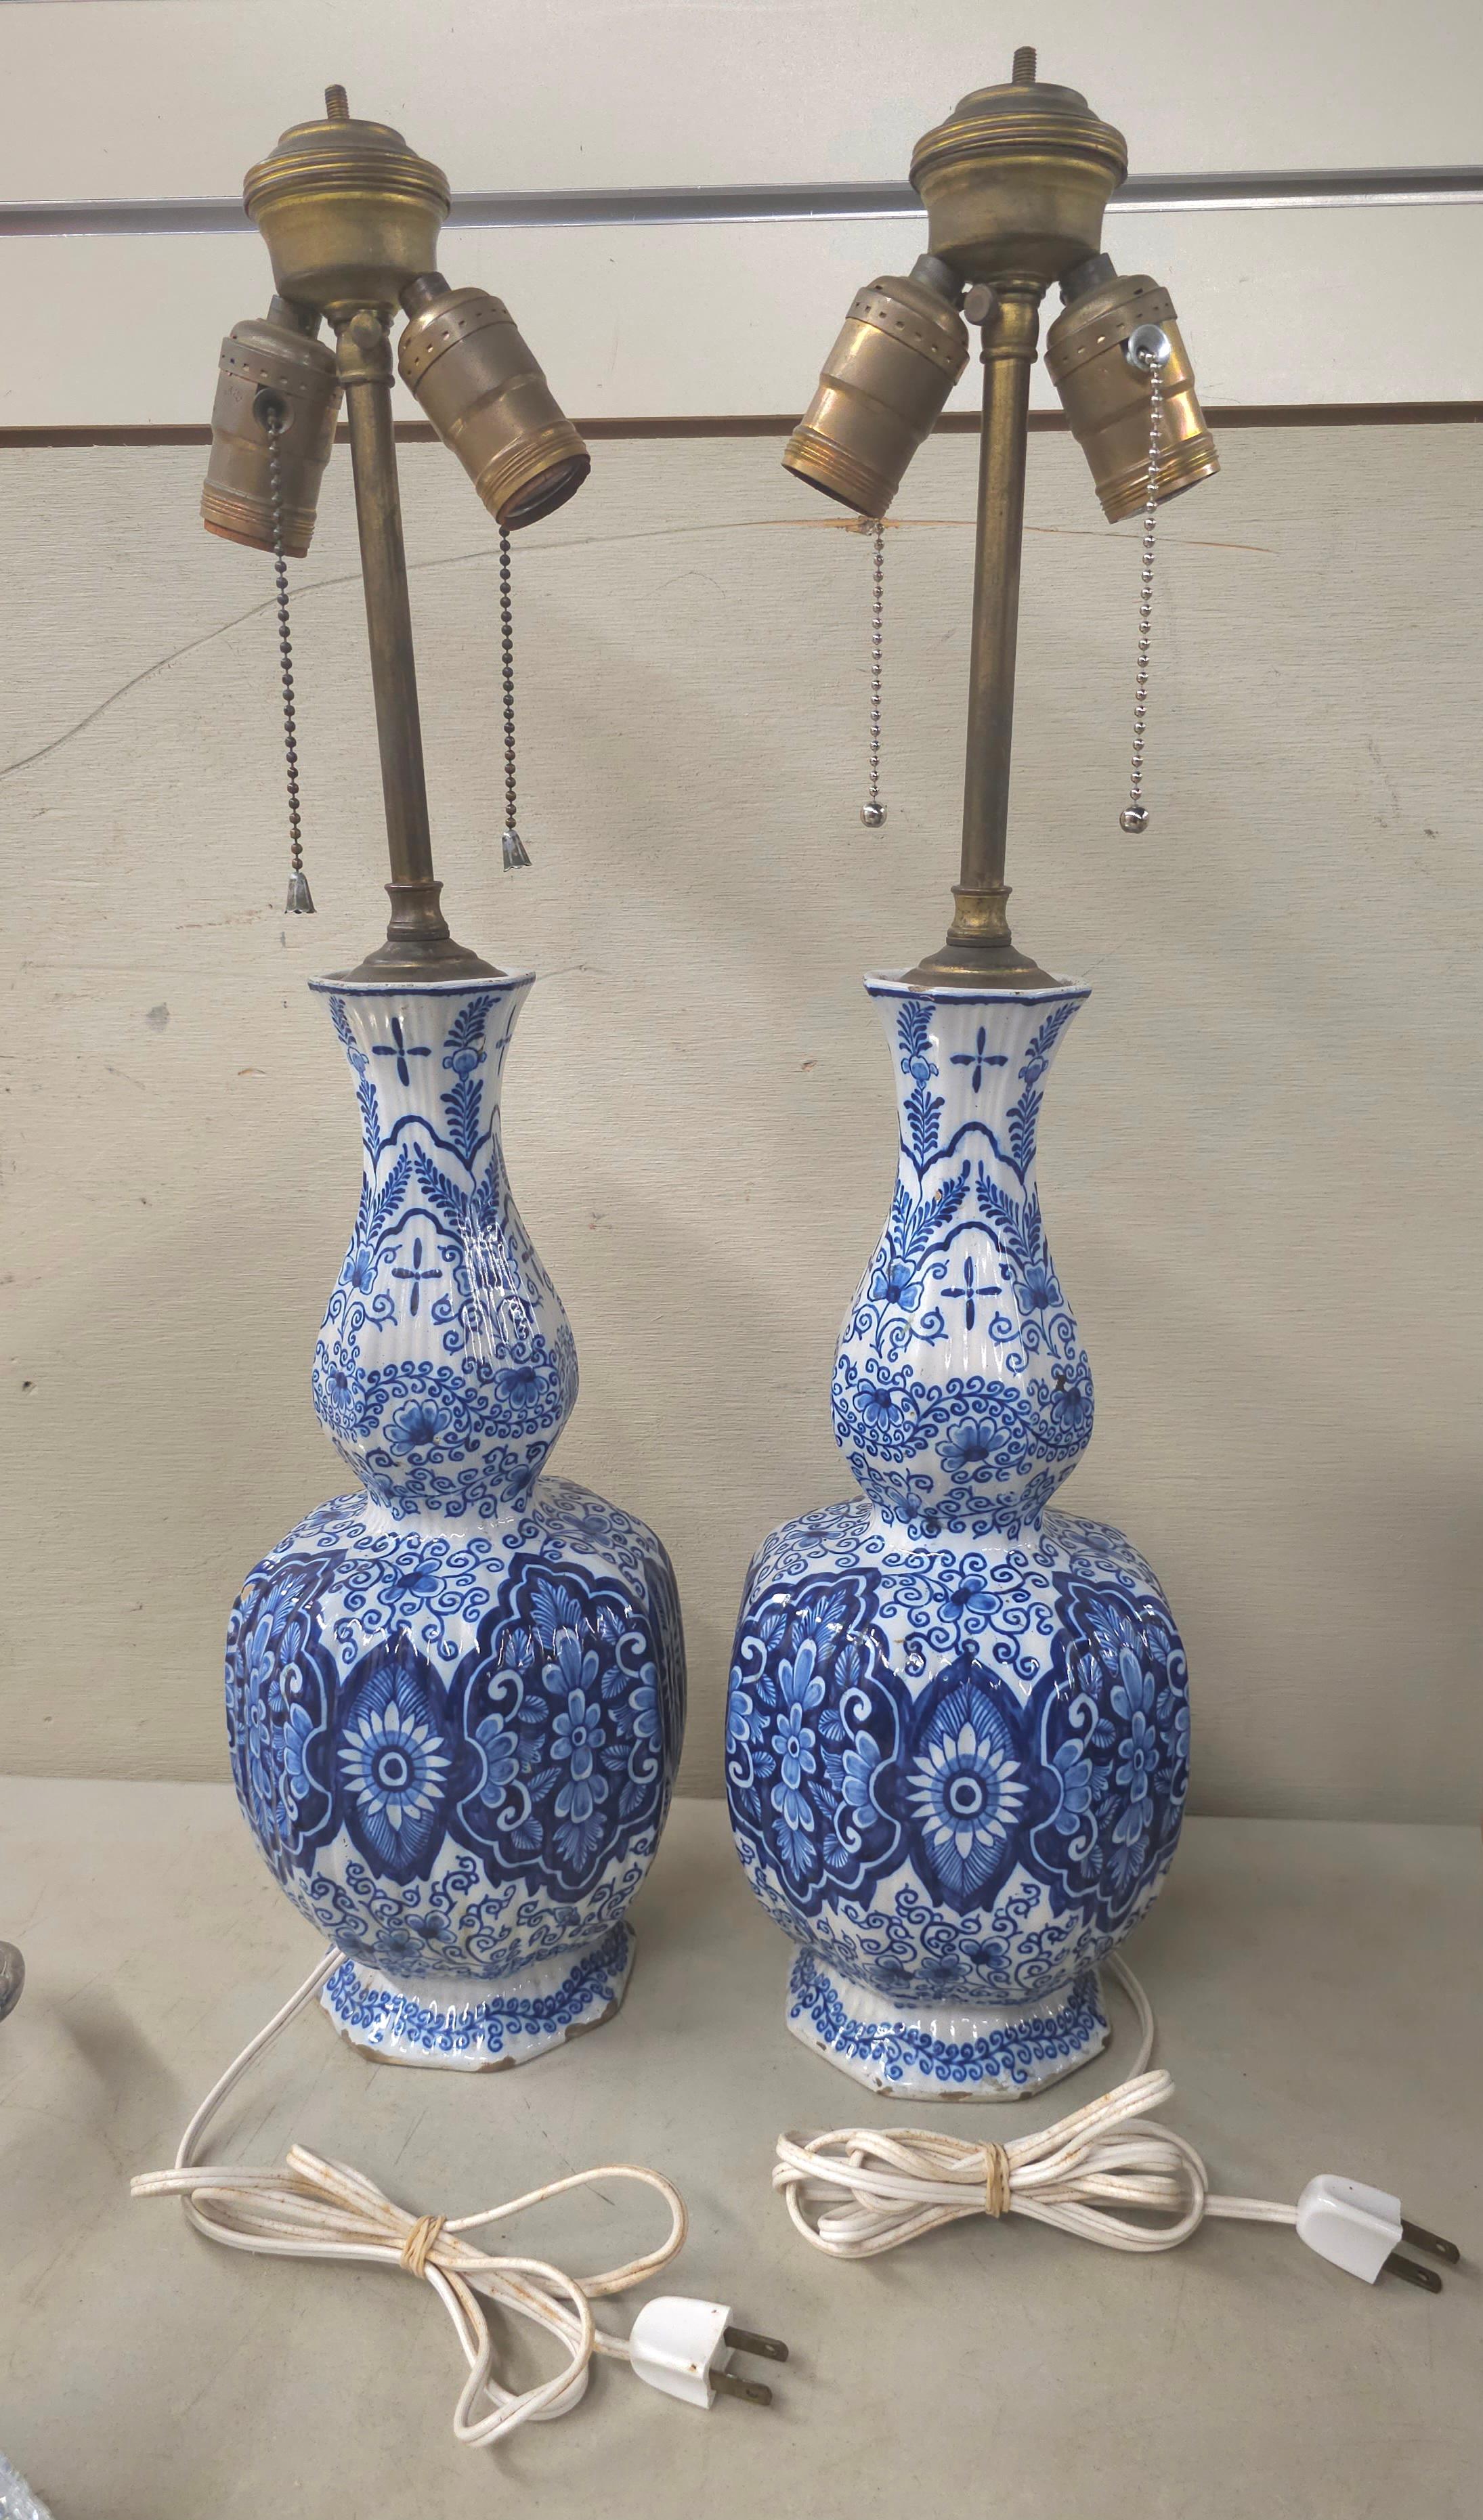 Peinture Paire de vases à poser ou suspendre de lampe bleu et blanc Royal Delft du 18e siècle, signés Van Duijn en vente